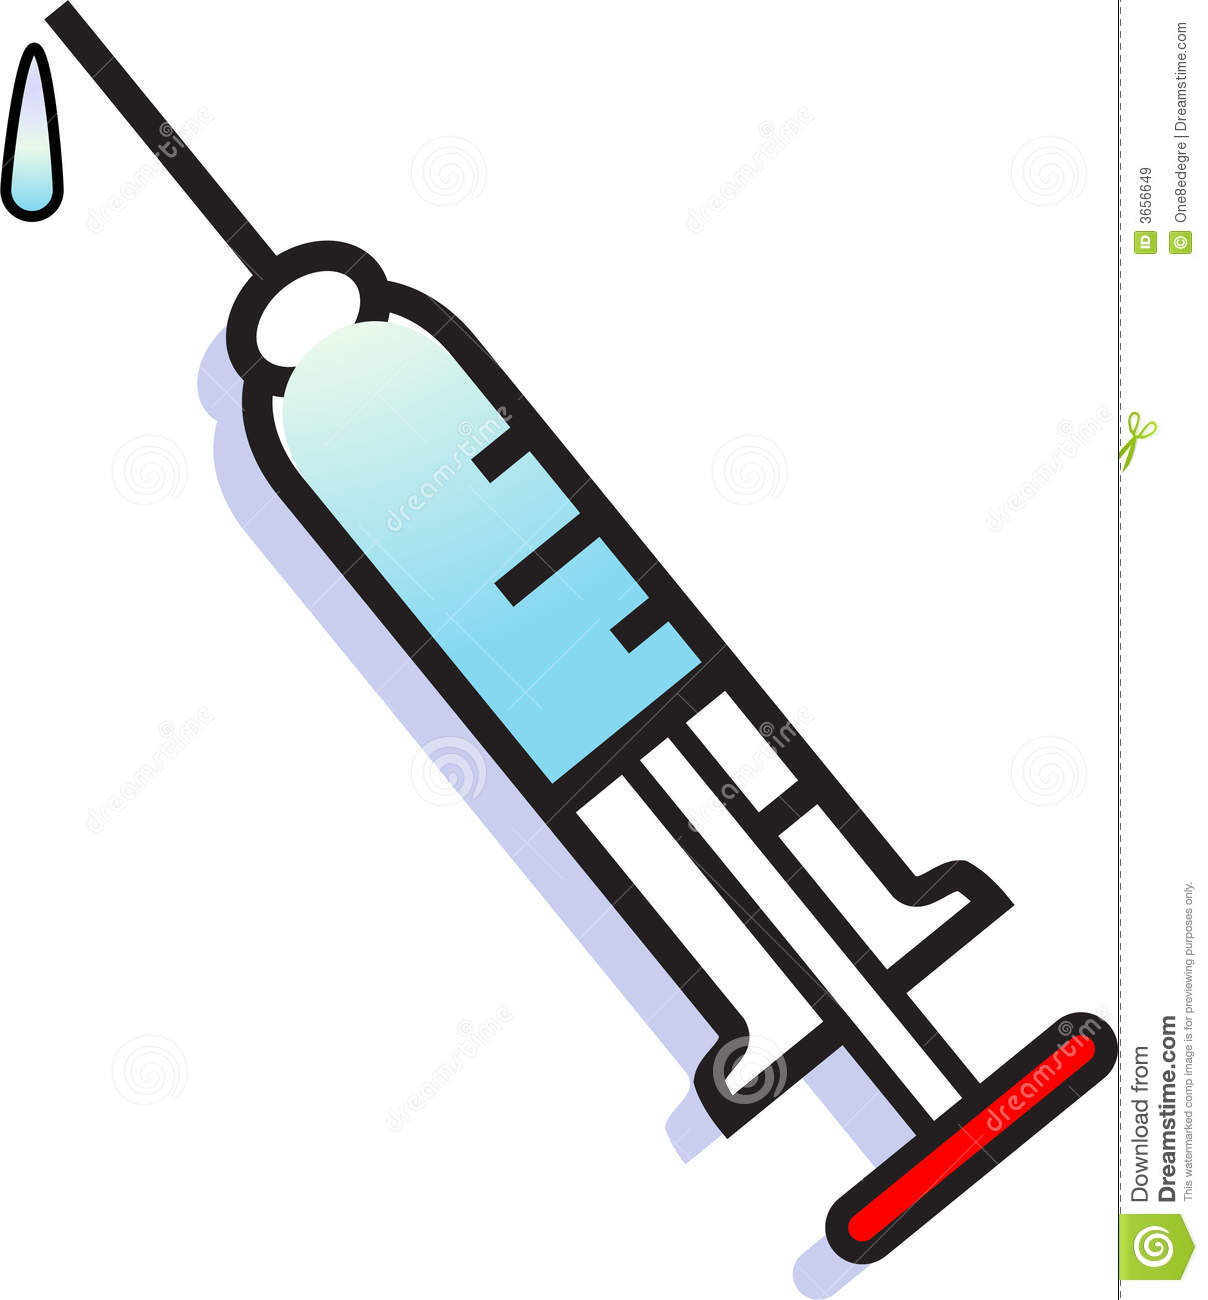 Animated syringe clipart